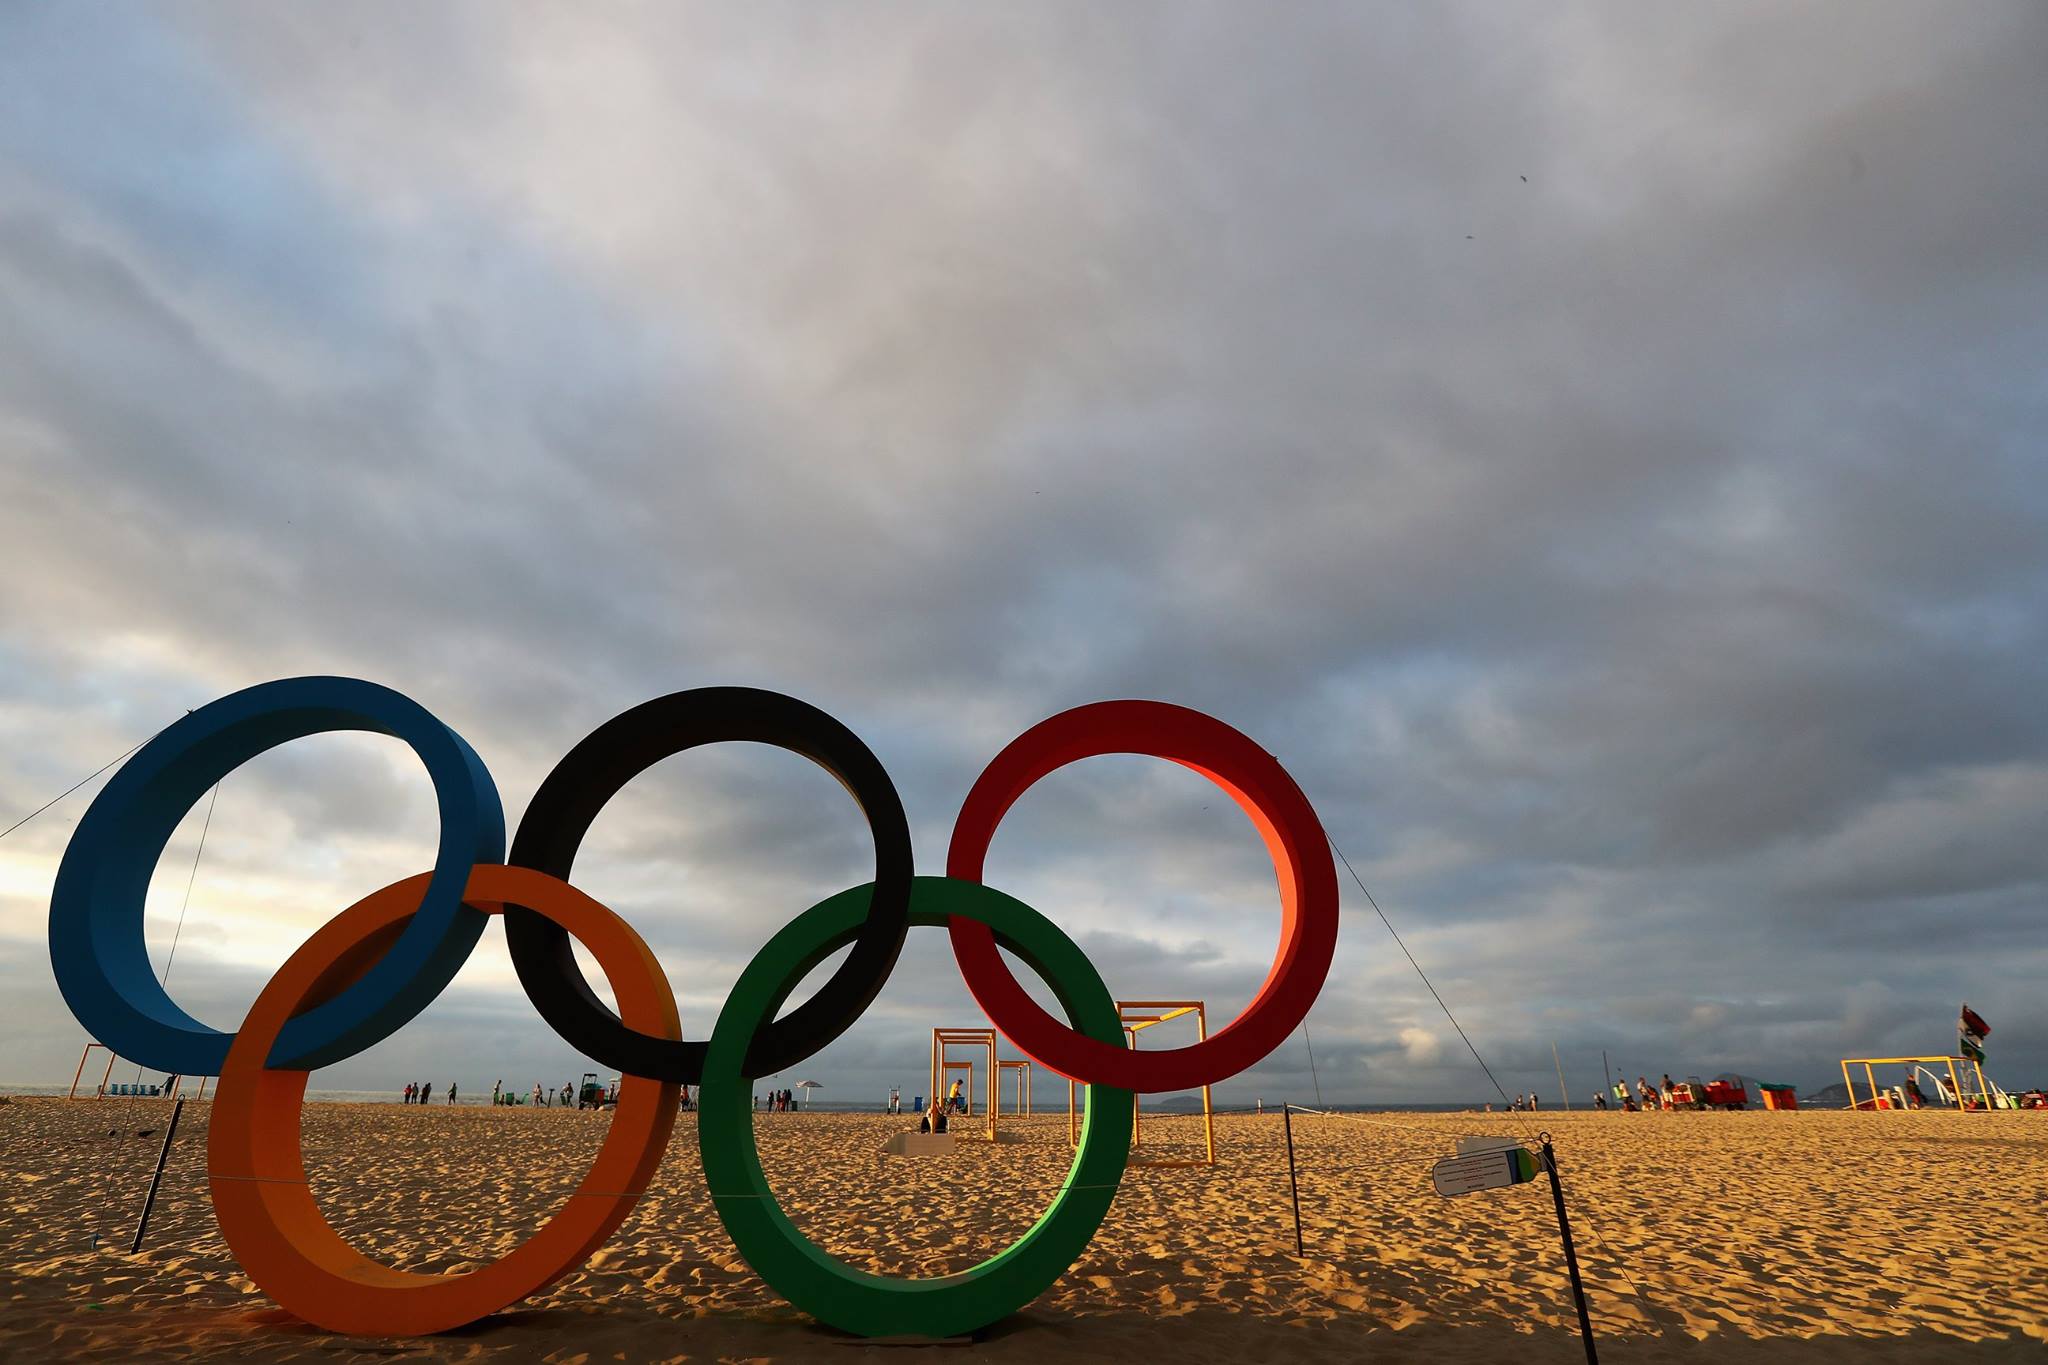 Η παραλία Κοπακαμπάνα στο Ρίο Ντε Τζανέιρο, όπου θα πραγματοποιηθούν οι αγώνες μπιτς βόλεϊ (Πηγή φωτογραφίας: Facebook/Olympic)